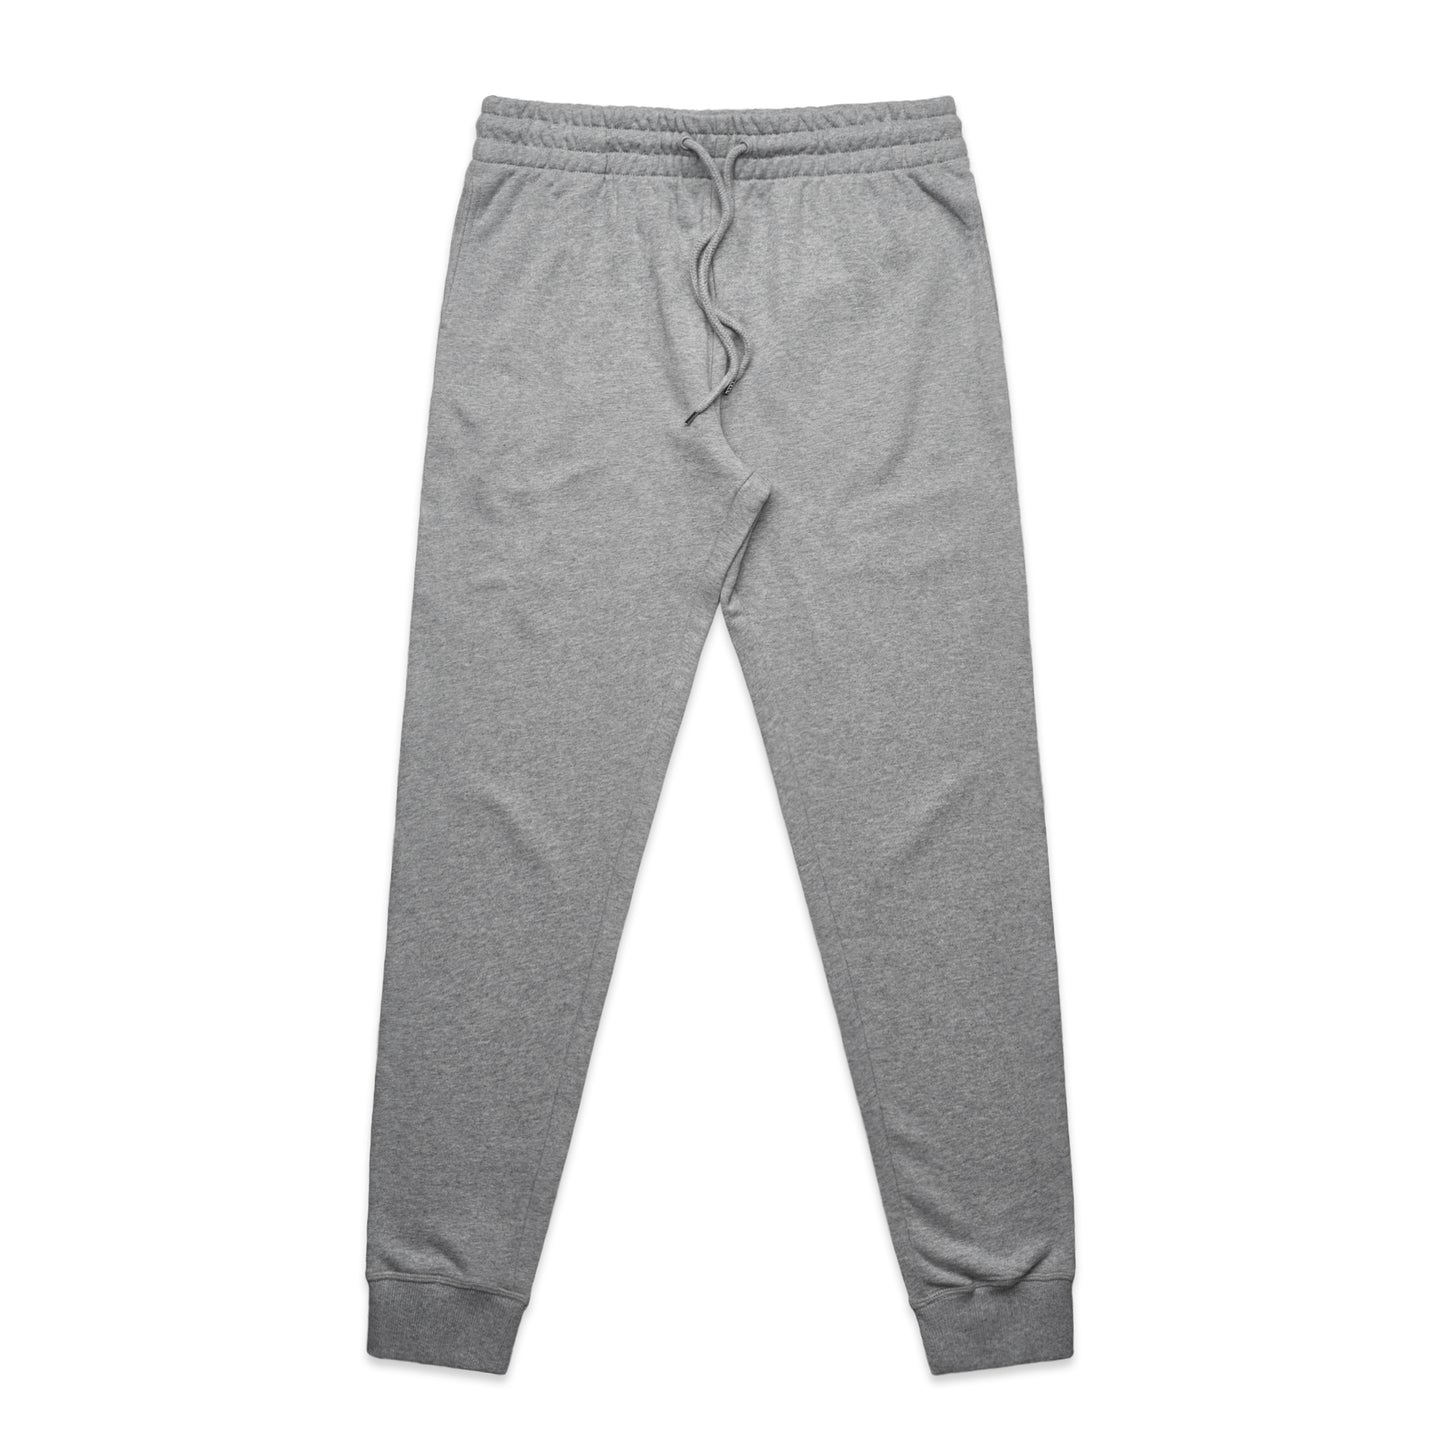 Ascolour Mens Premium Track Pants (5920)